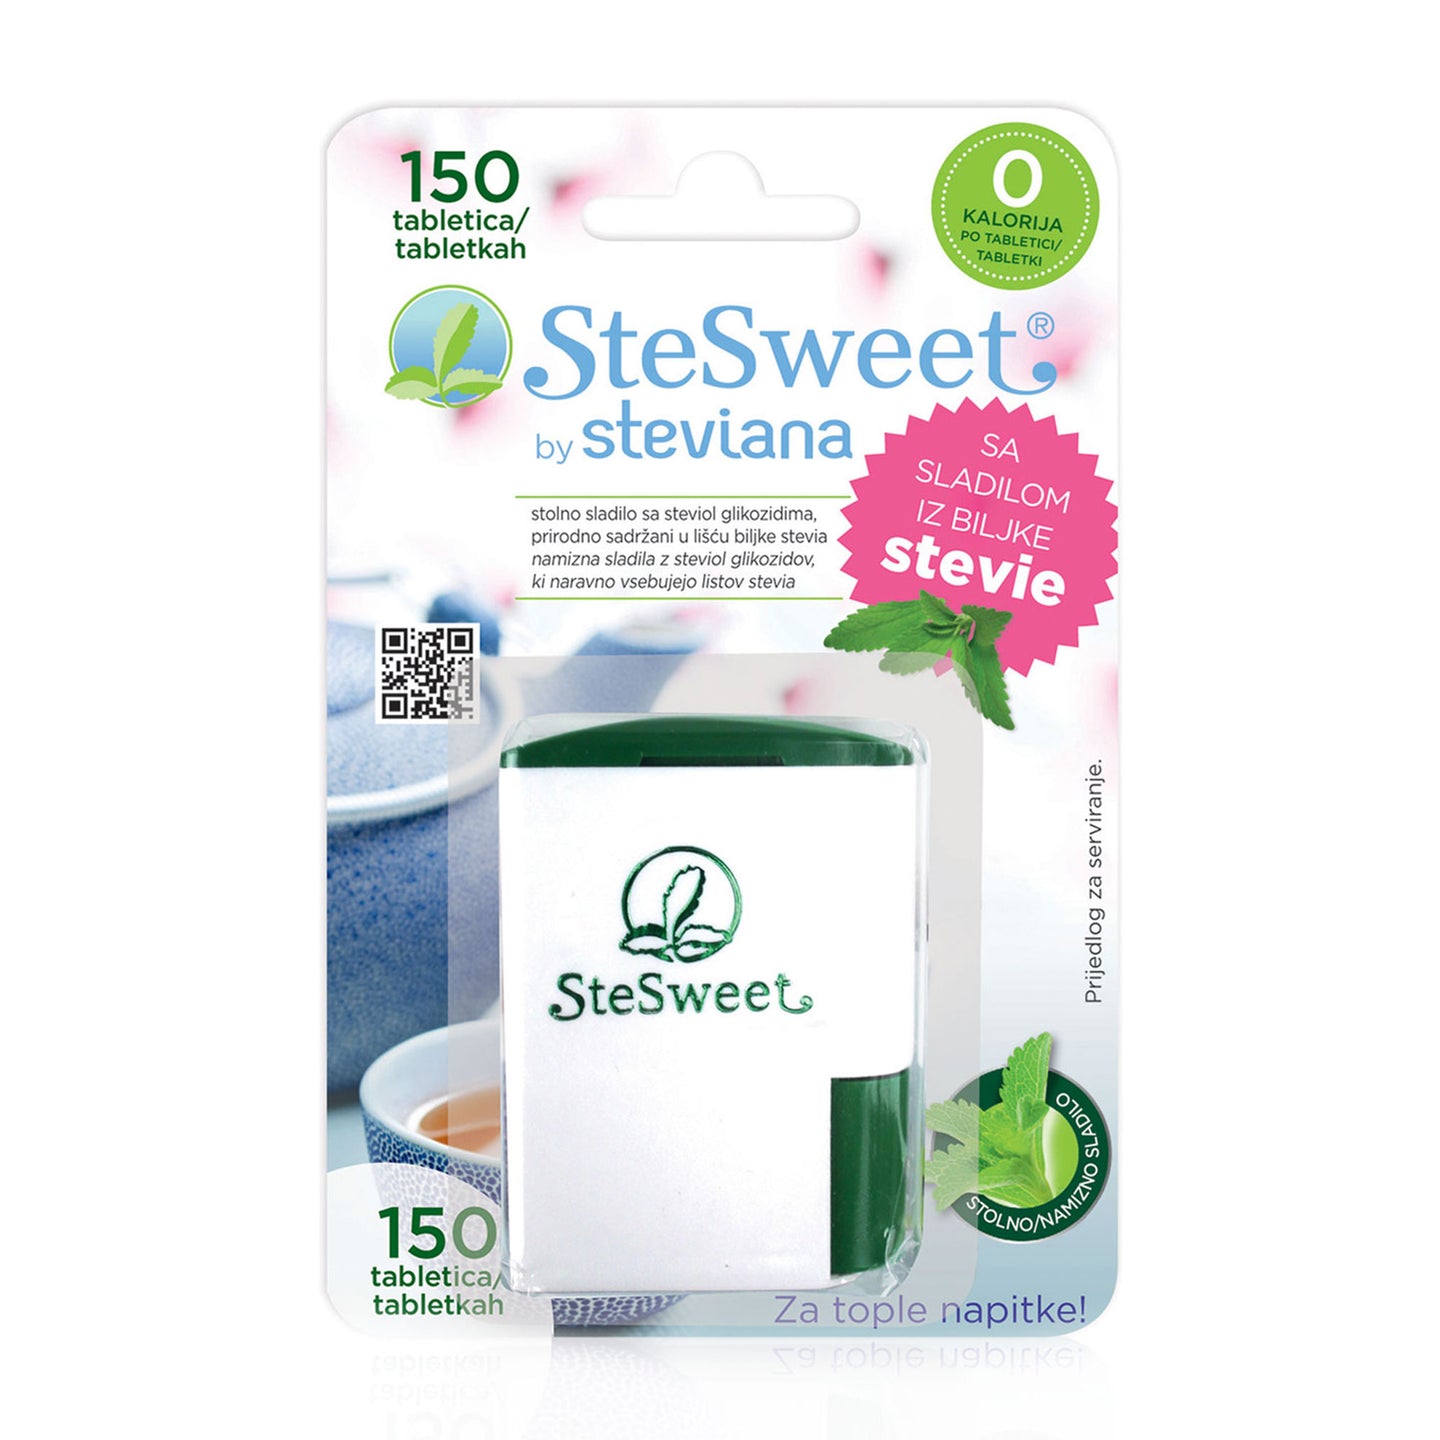 Stevia në tableta, 150tbl